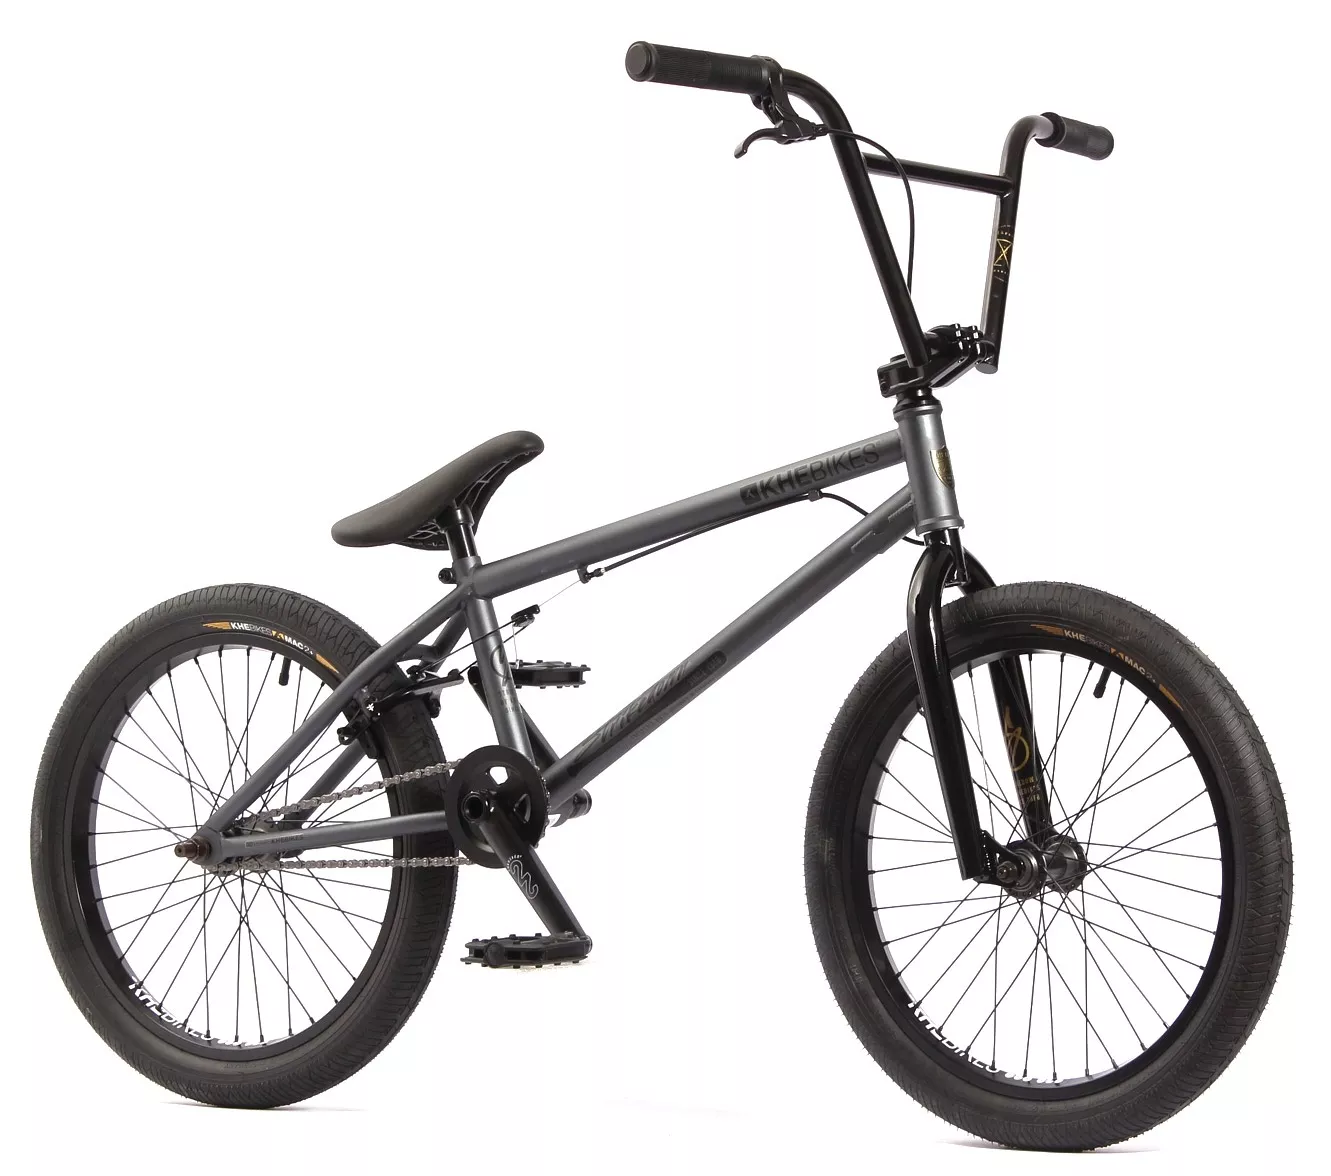 Outlet N1: BMX bike KHE STRIKEDOWN PRO 20 inch 21.4lbs